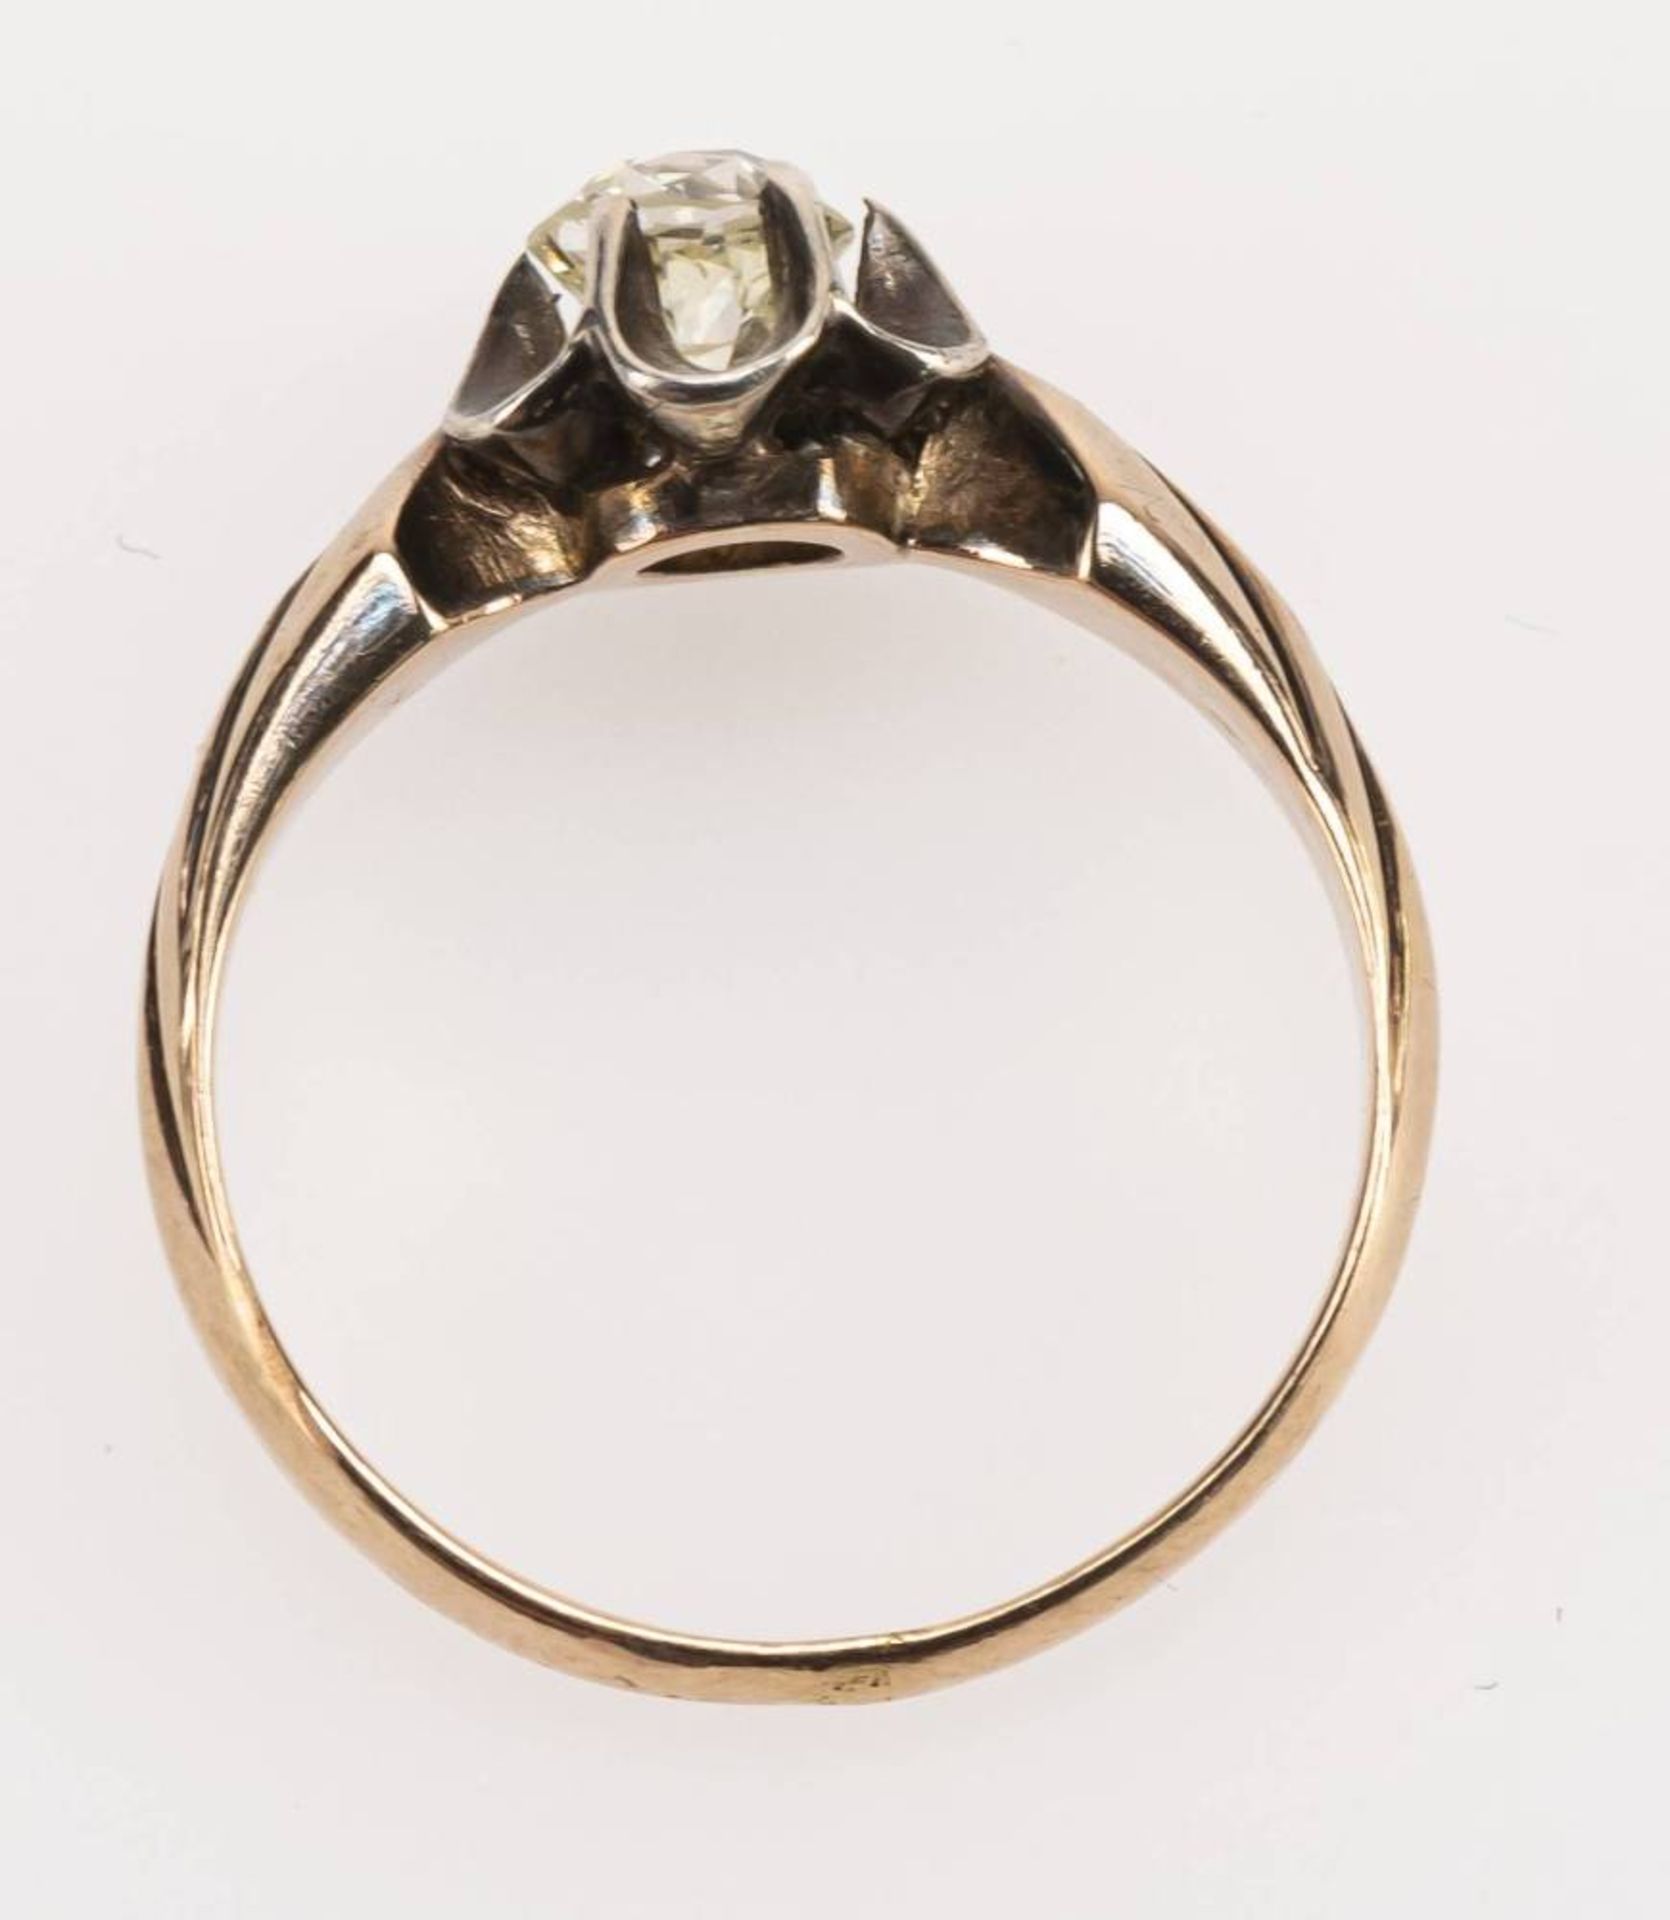 Diamant Solitär Ring, 585 Rotgold, altschliff Diamant von ca. 0,4 ct, sichtbare Lötstelle, RW 50, - Image 4 of 4